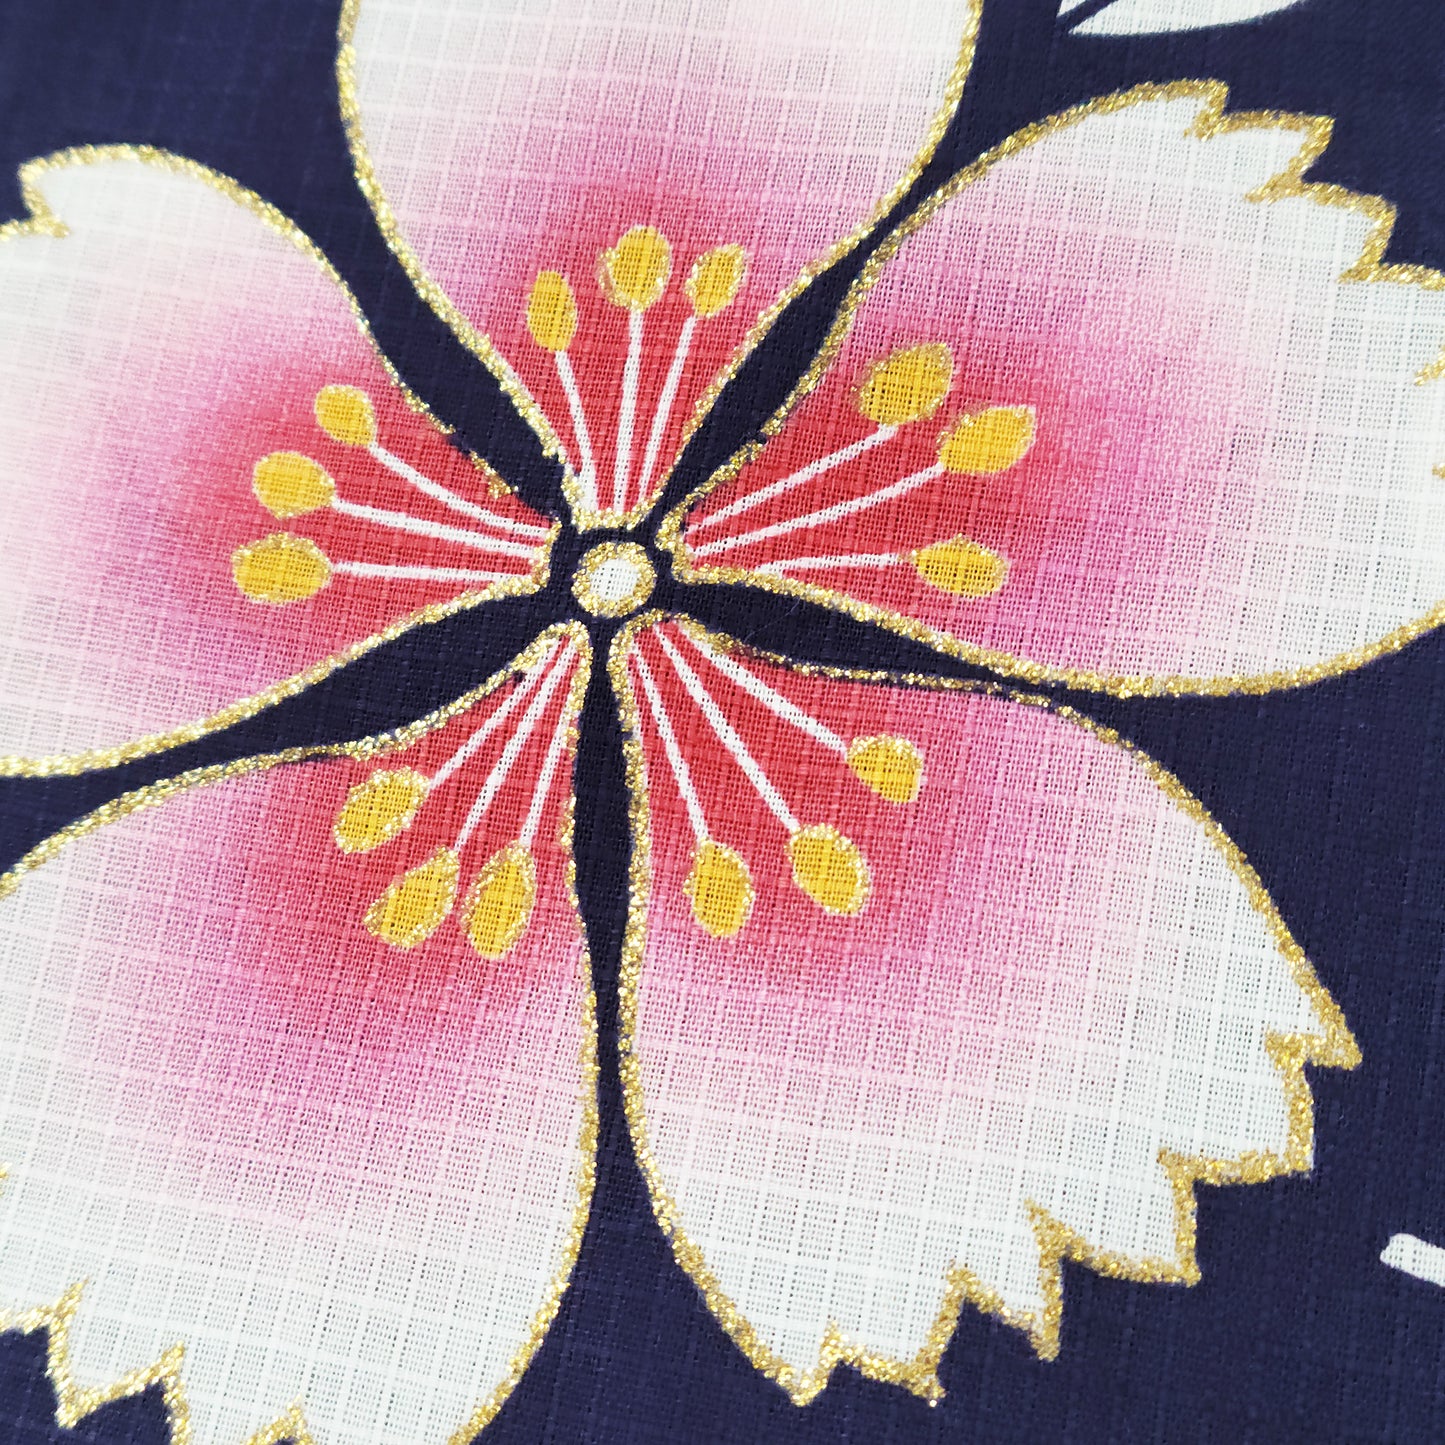 Cherry blossom Japanese fabric for yukata